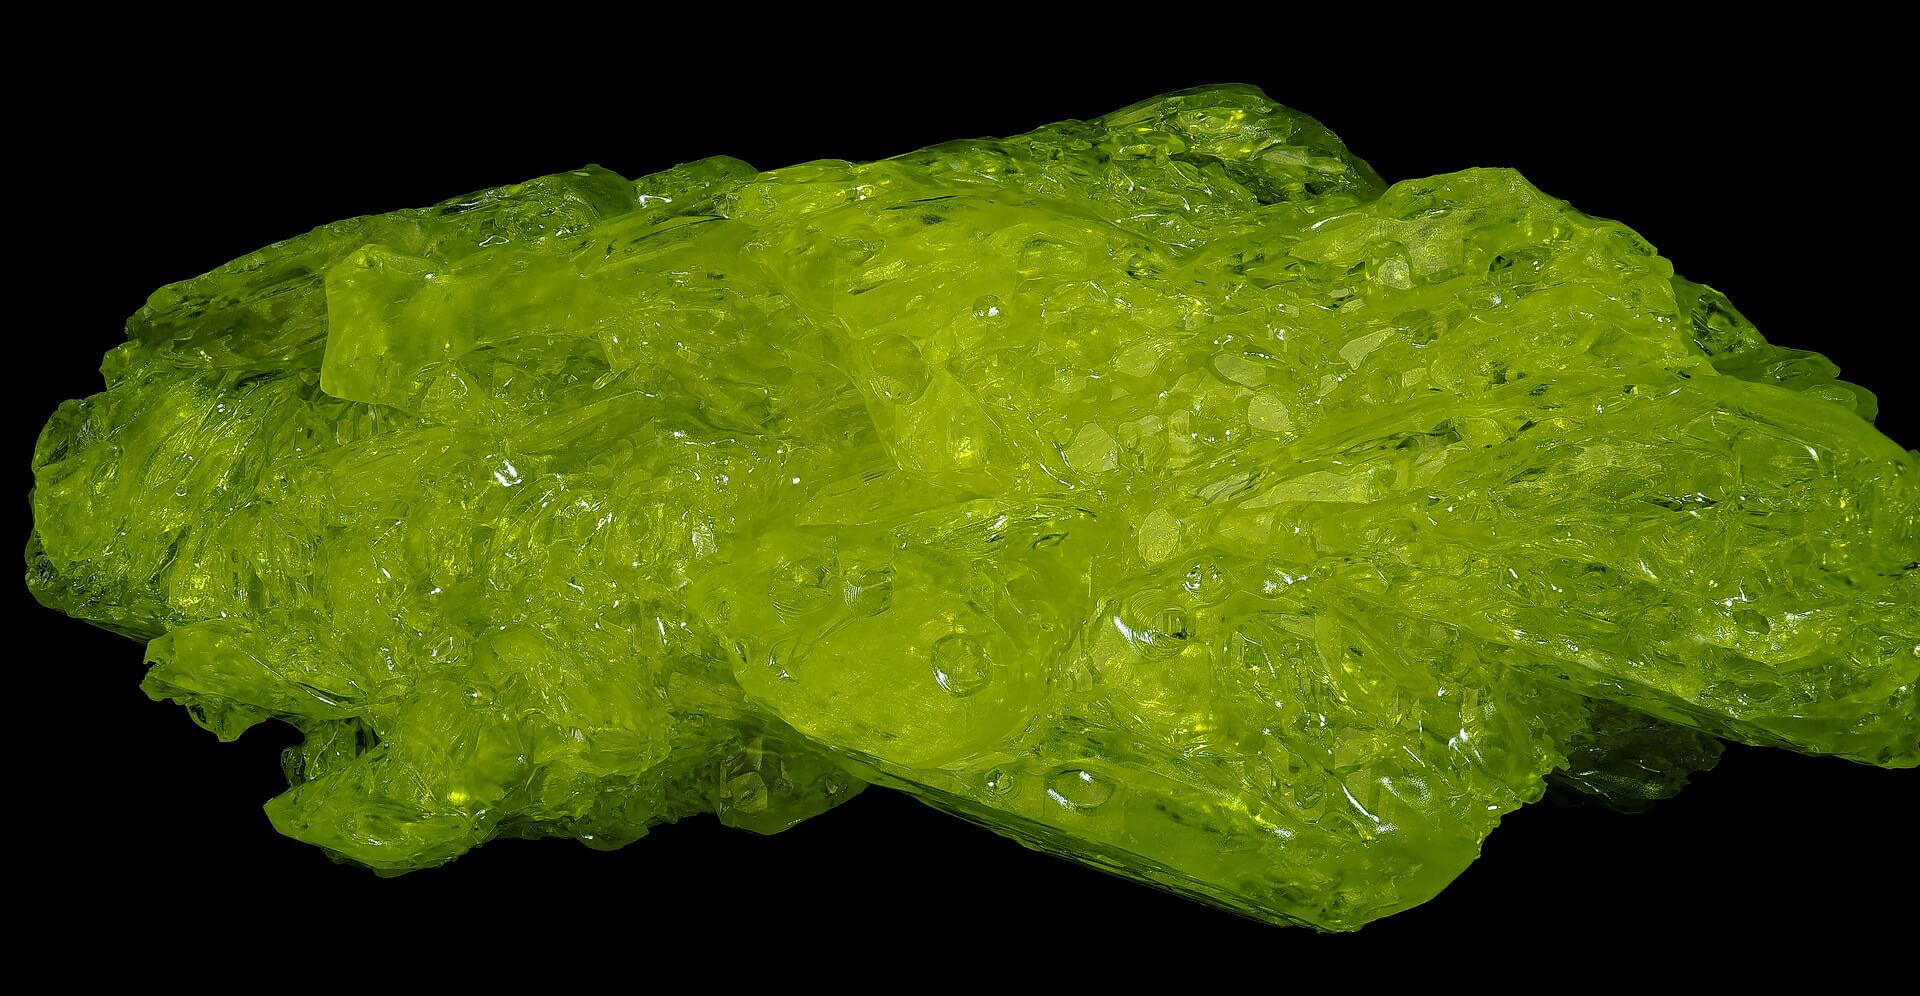 full-length sulphur crystal, backlit